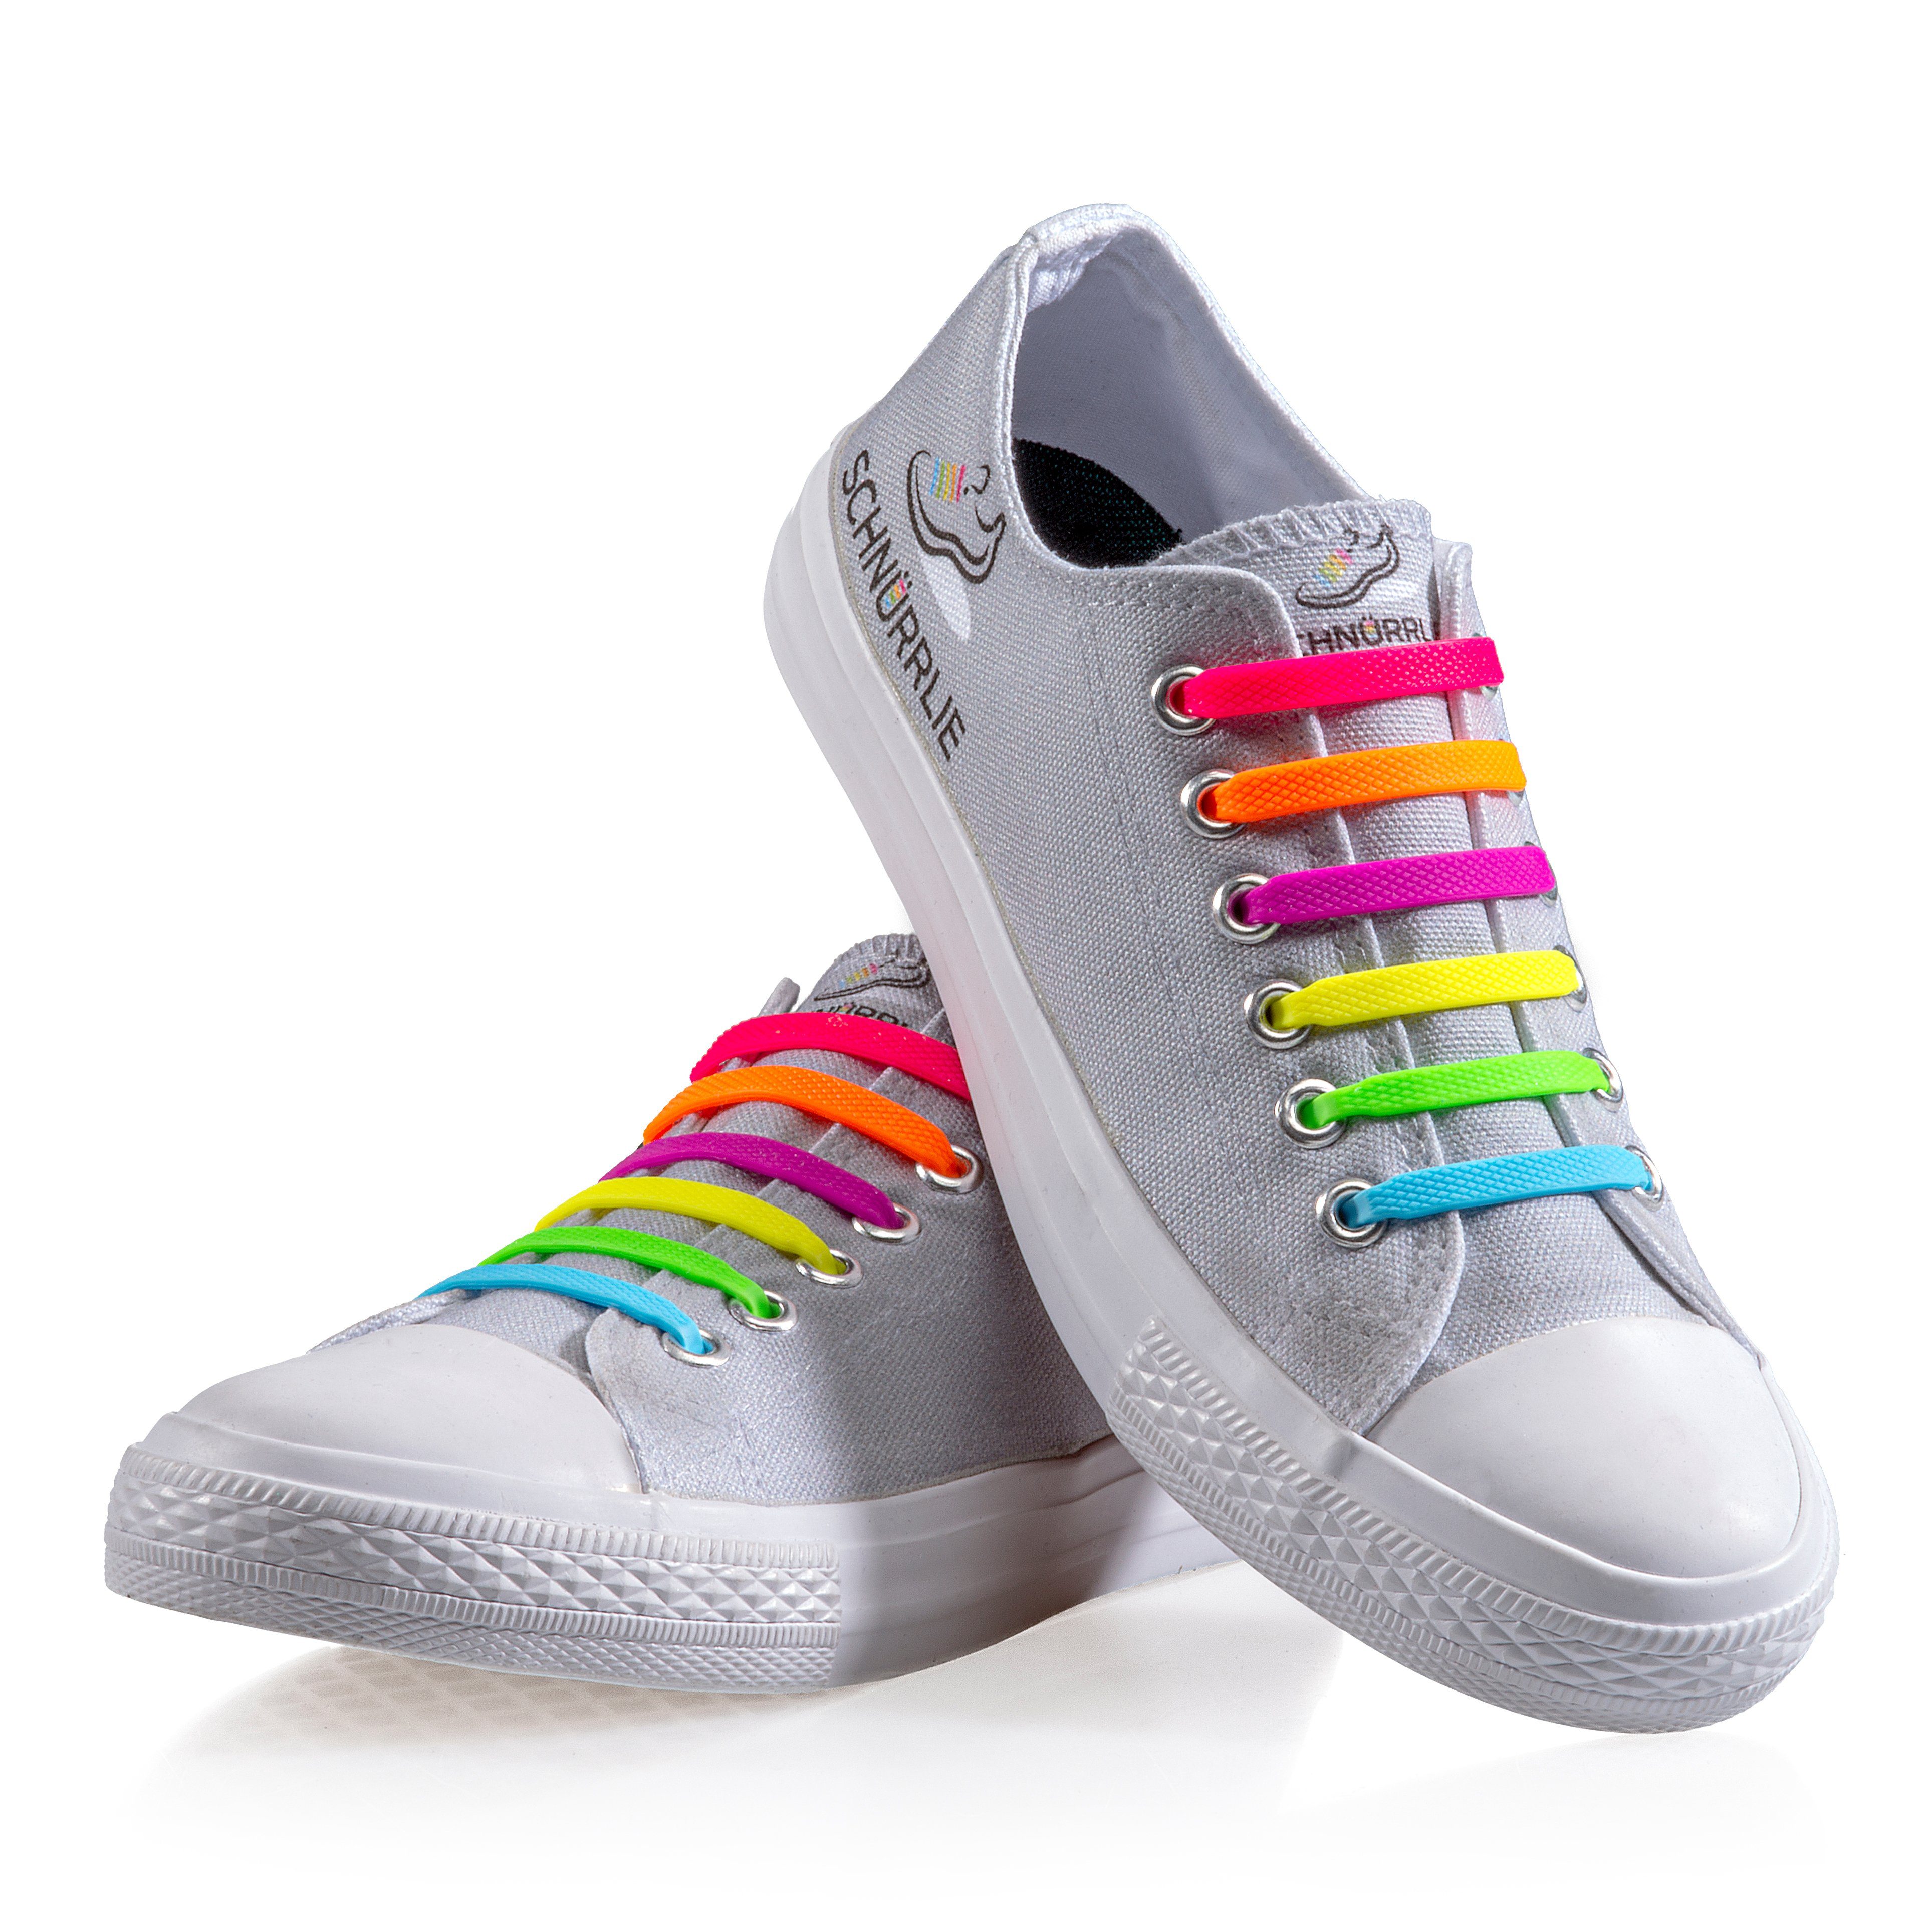 SCHNÜRRLIE Schnürsenkel Silikon Sneaker, uvm Laces, Sportschuhe flache - Bunt für elastische Schnürbänder Turnschuhe